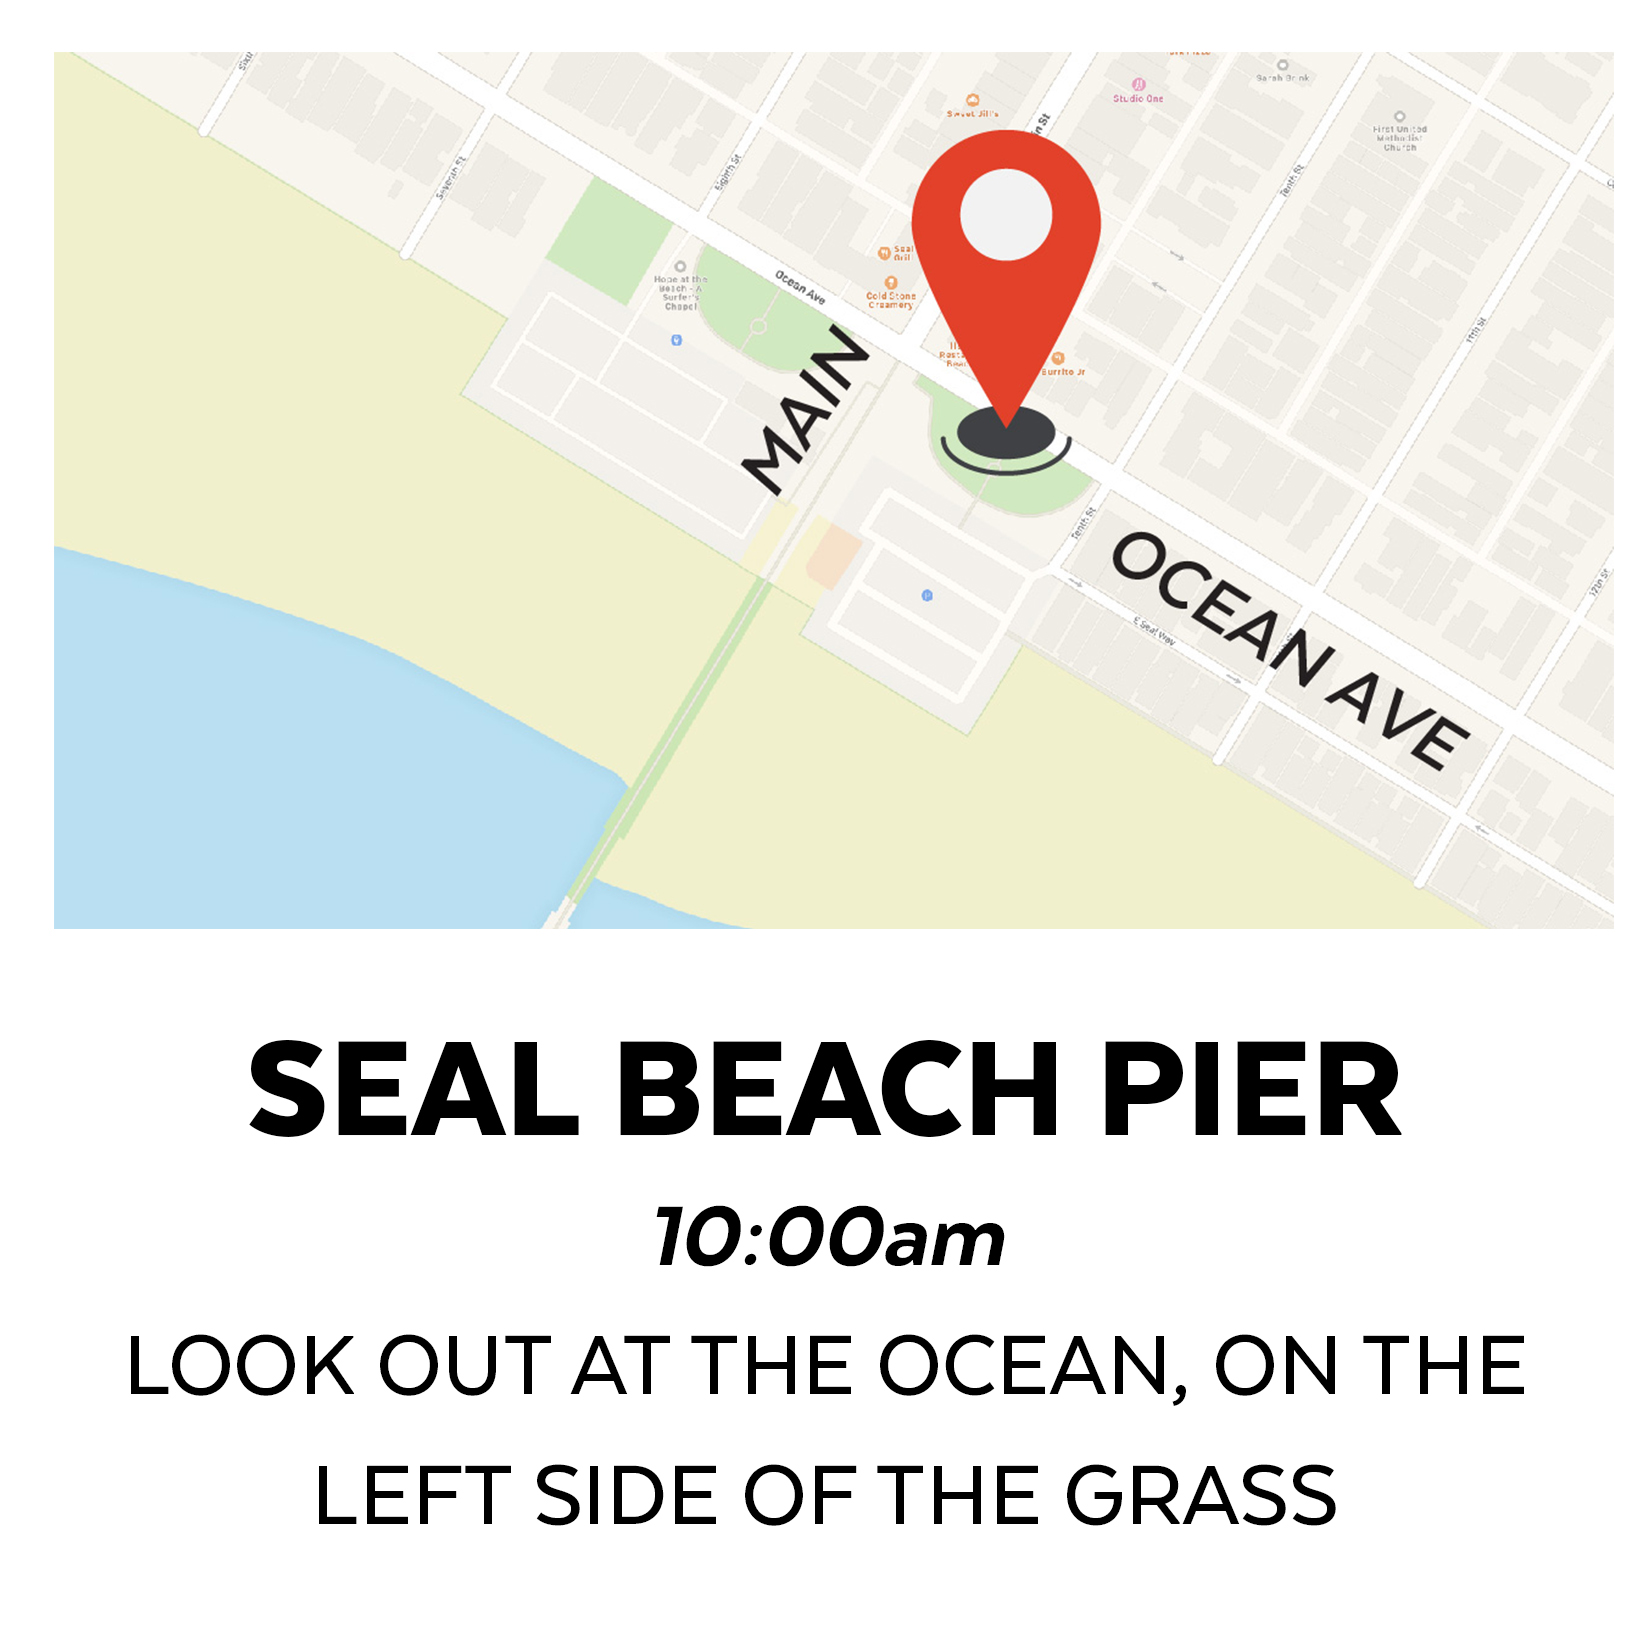 SEAL BEACH